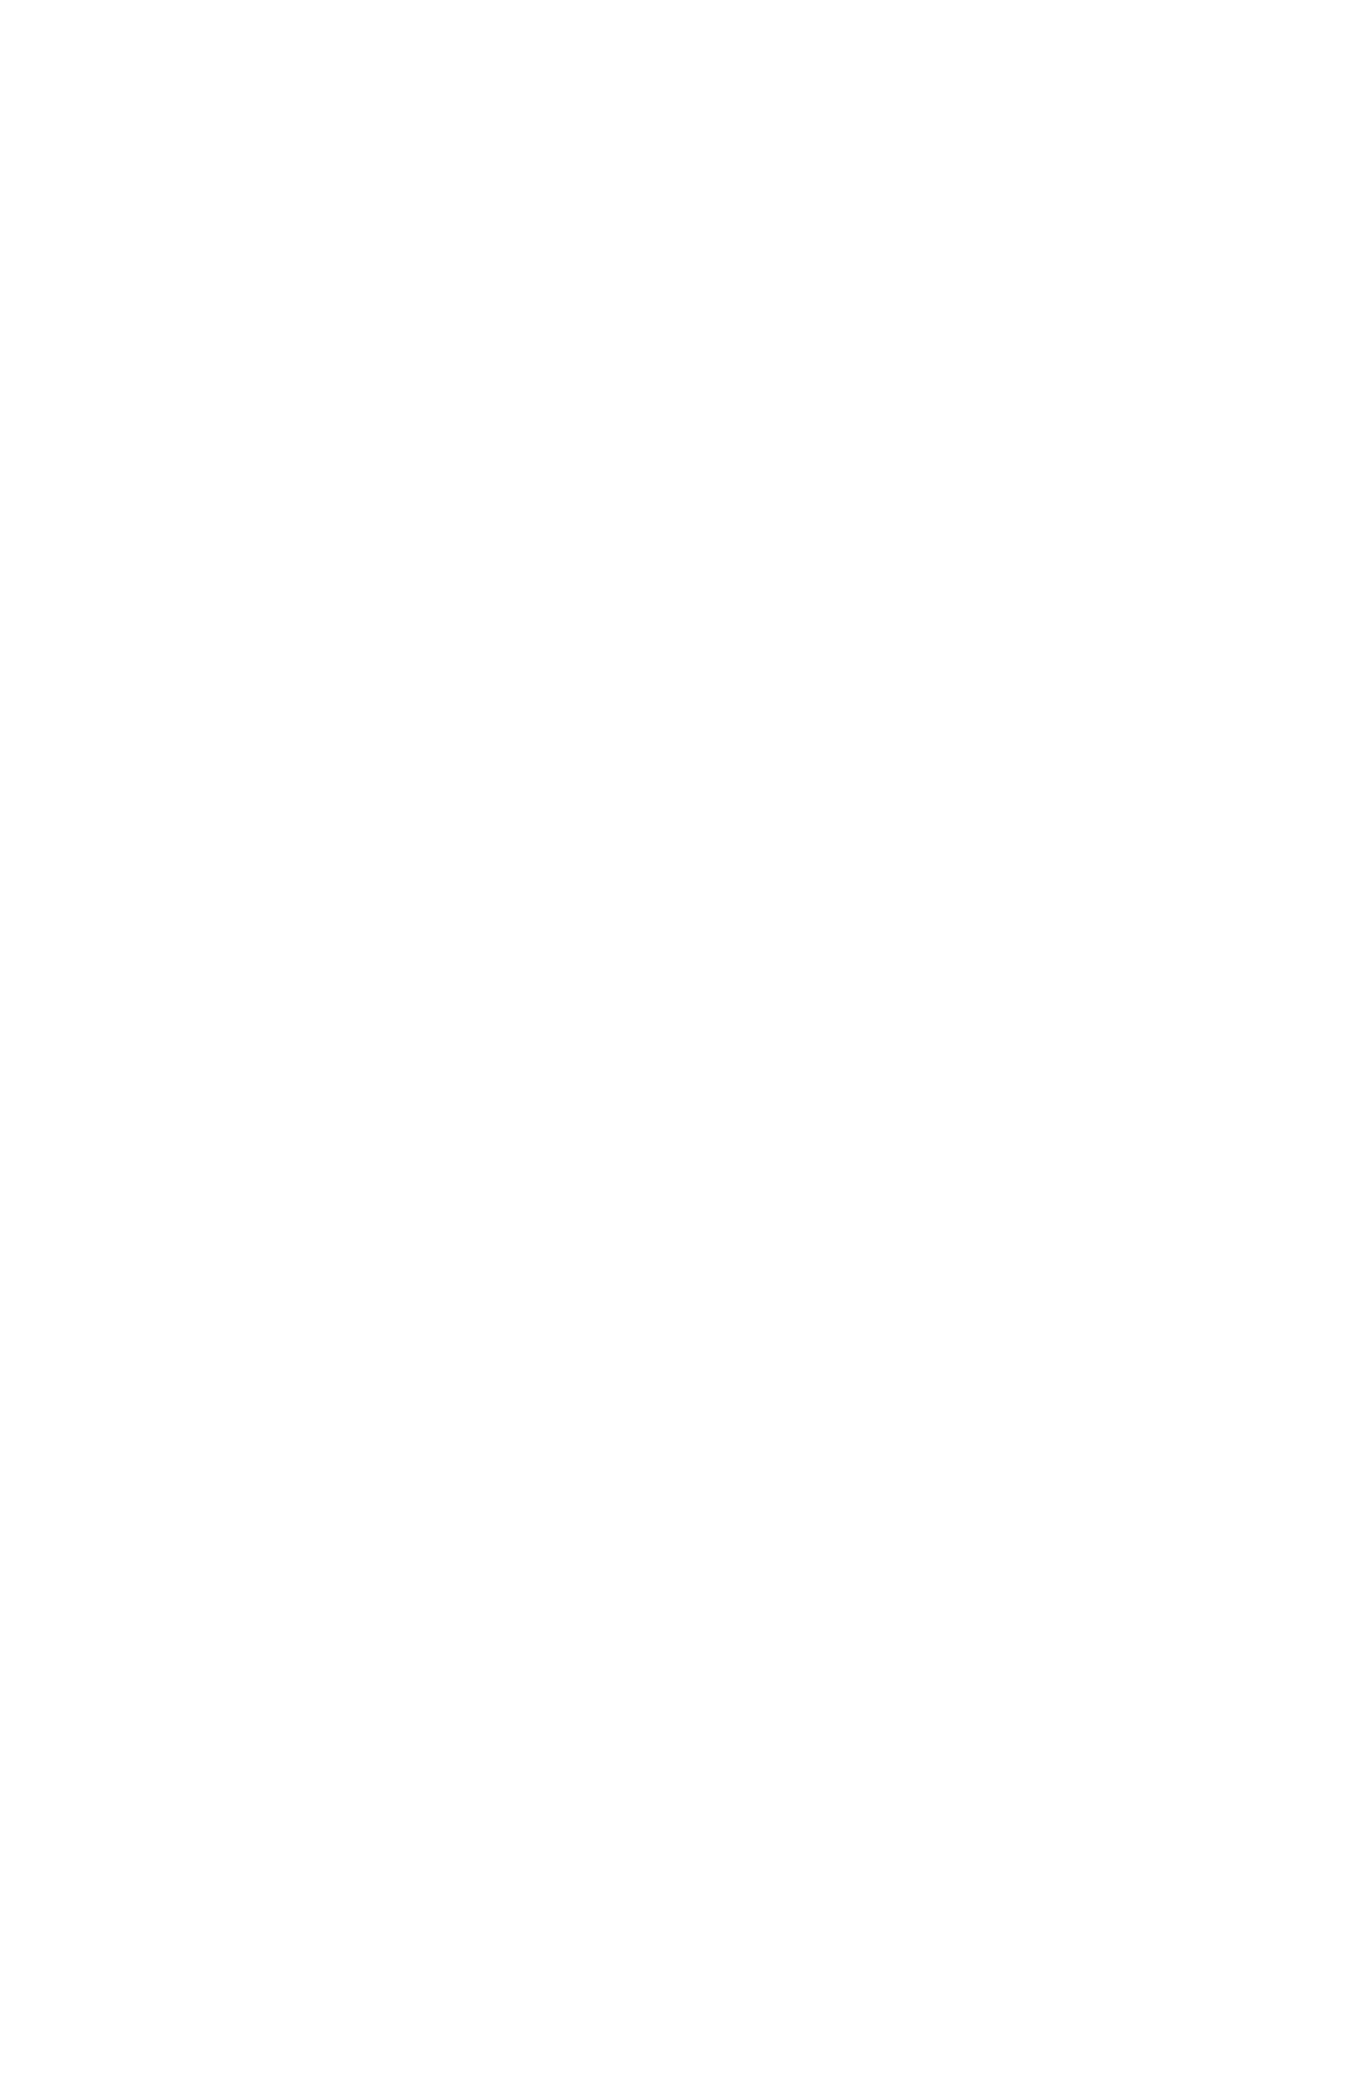 Historic Harrisville